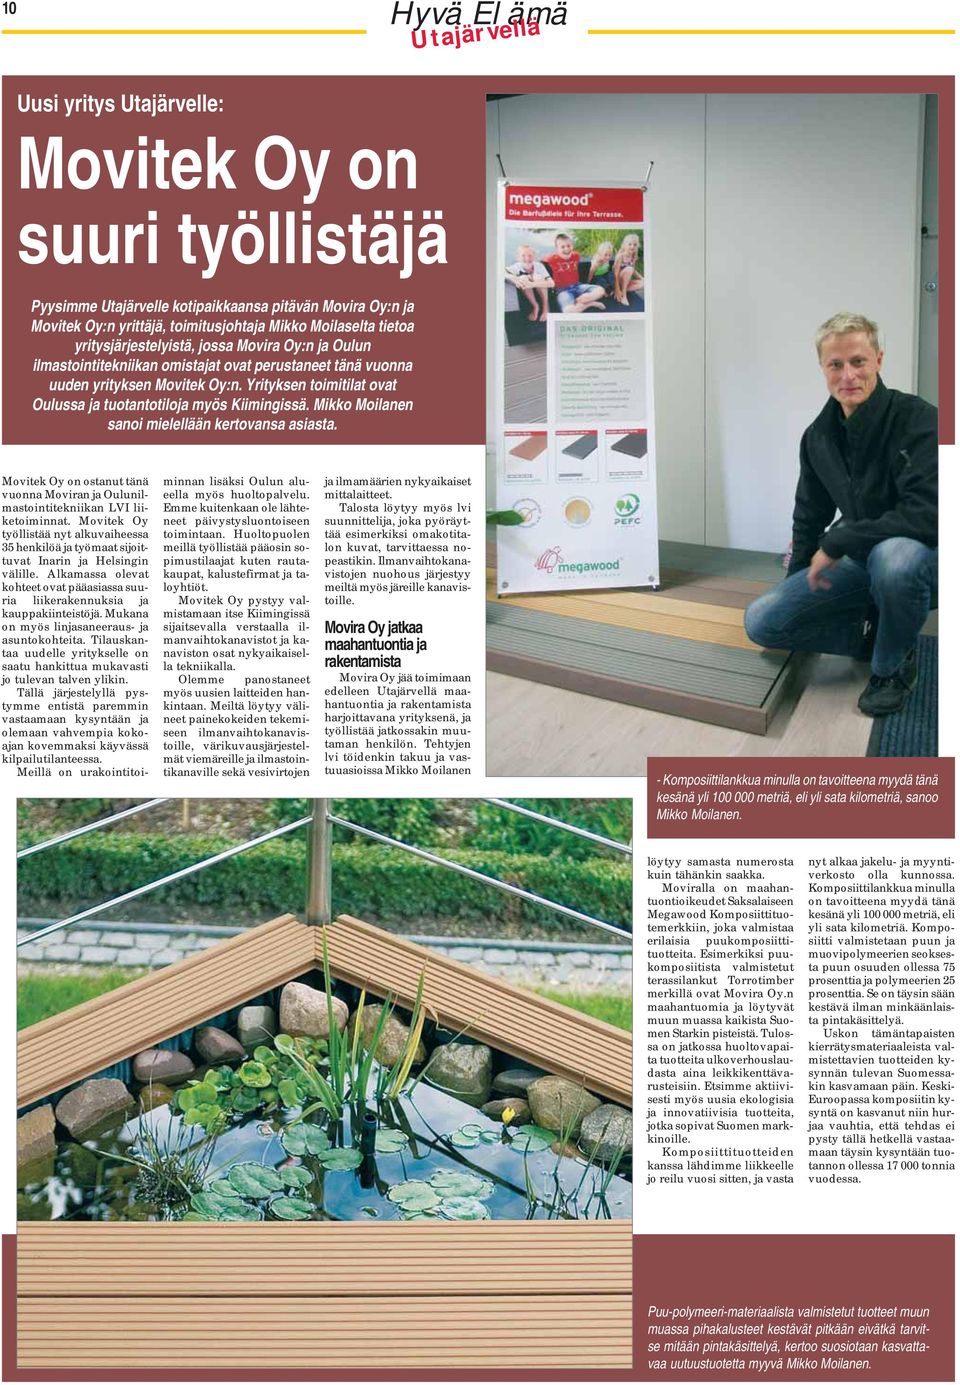 Yrityksen toimitilat ovat Oulussa ja tuotantotiloja myös Kiimingissä. Mikko Moilanen sanoi mielellään kertovansa asiasta.